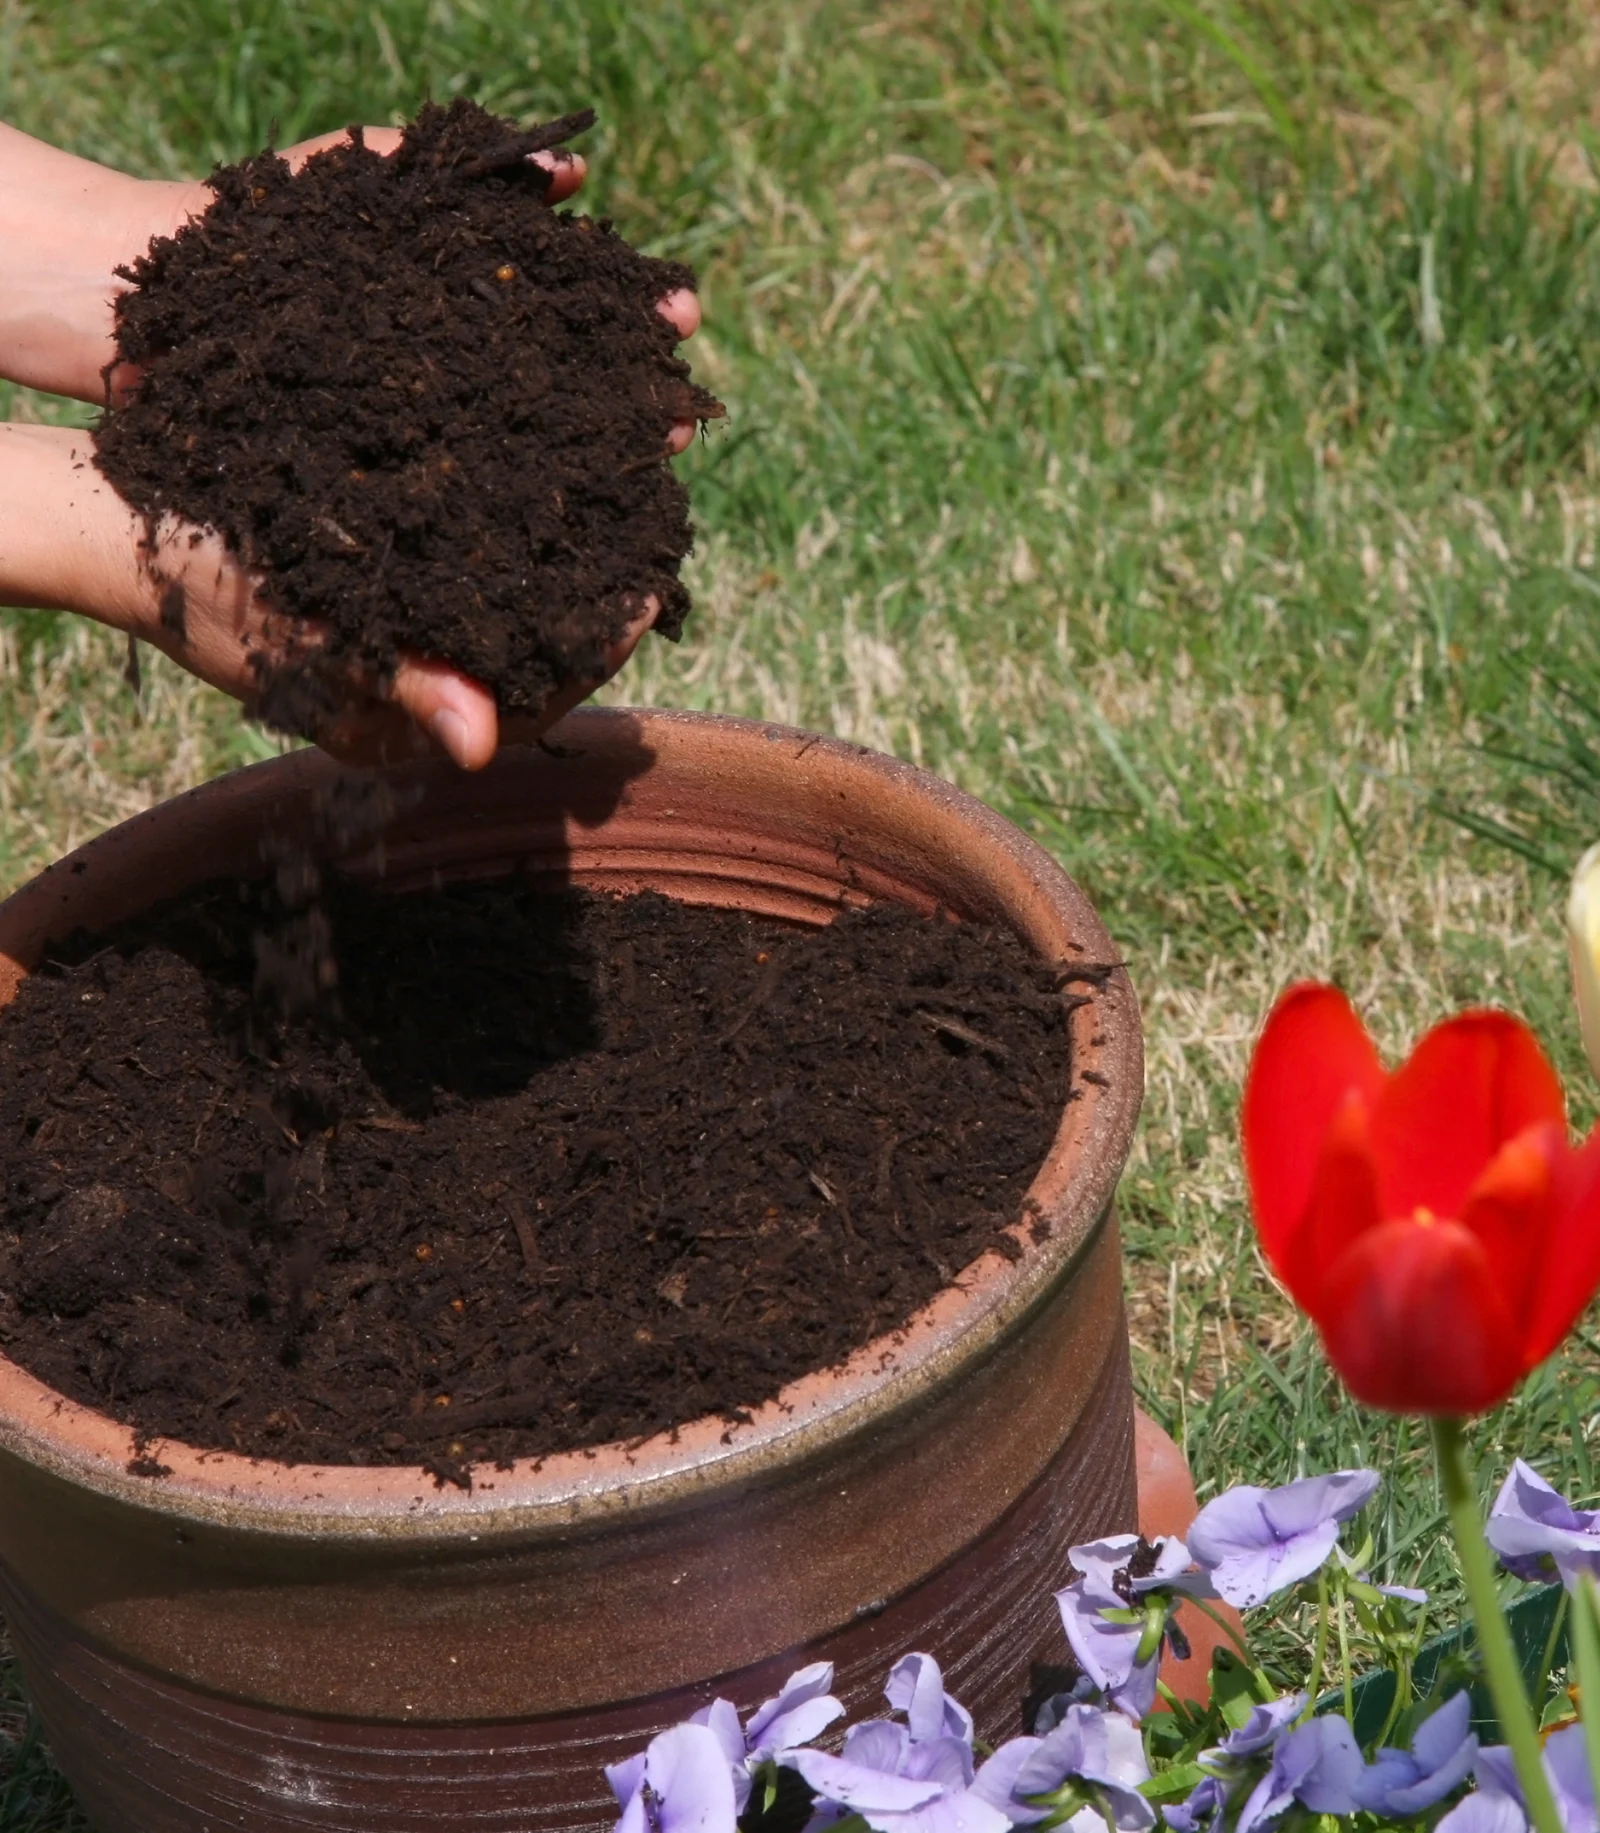 Garden soils